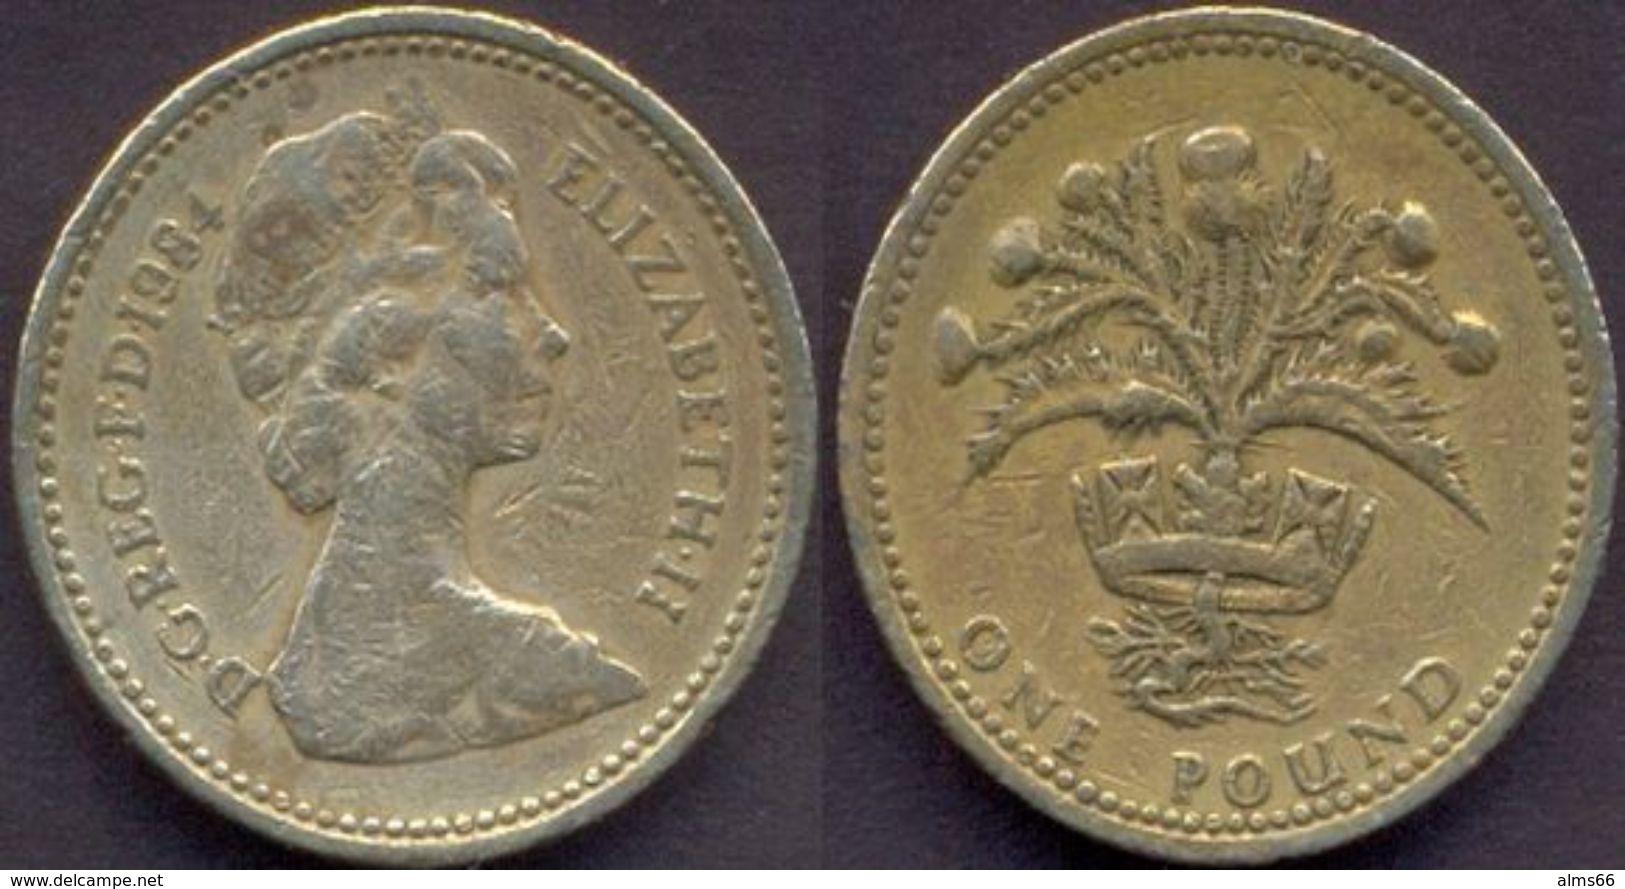 Great Britain UK 1 Pound 1984 AVF - 1 Pound